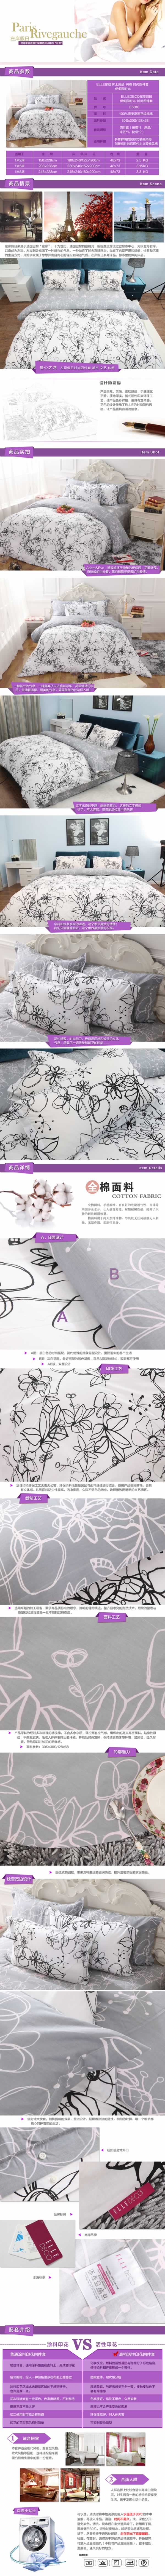 床上用品绵布系列纺织产品描述